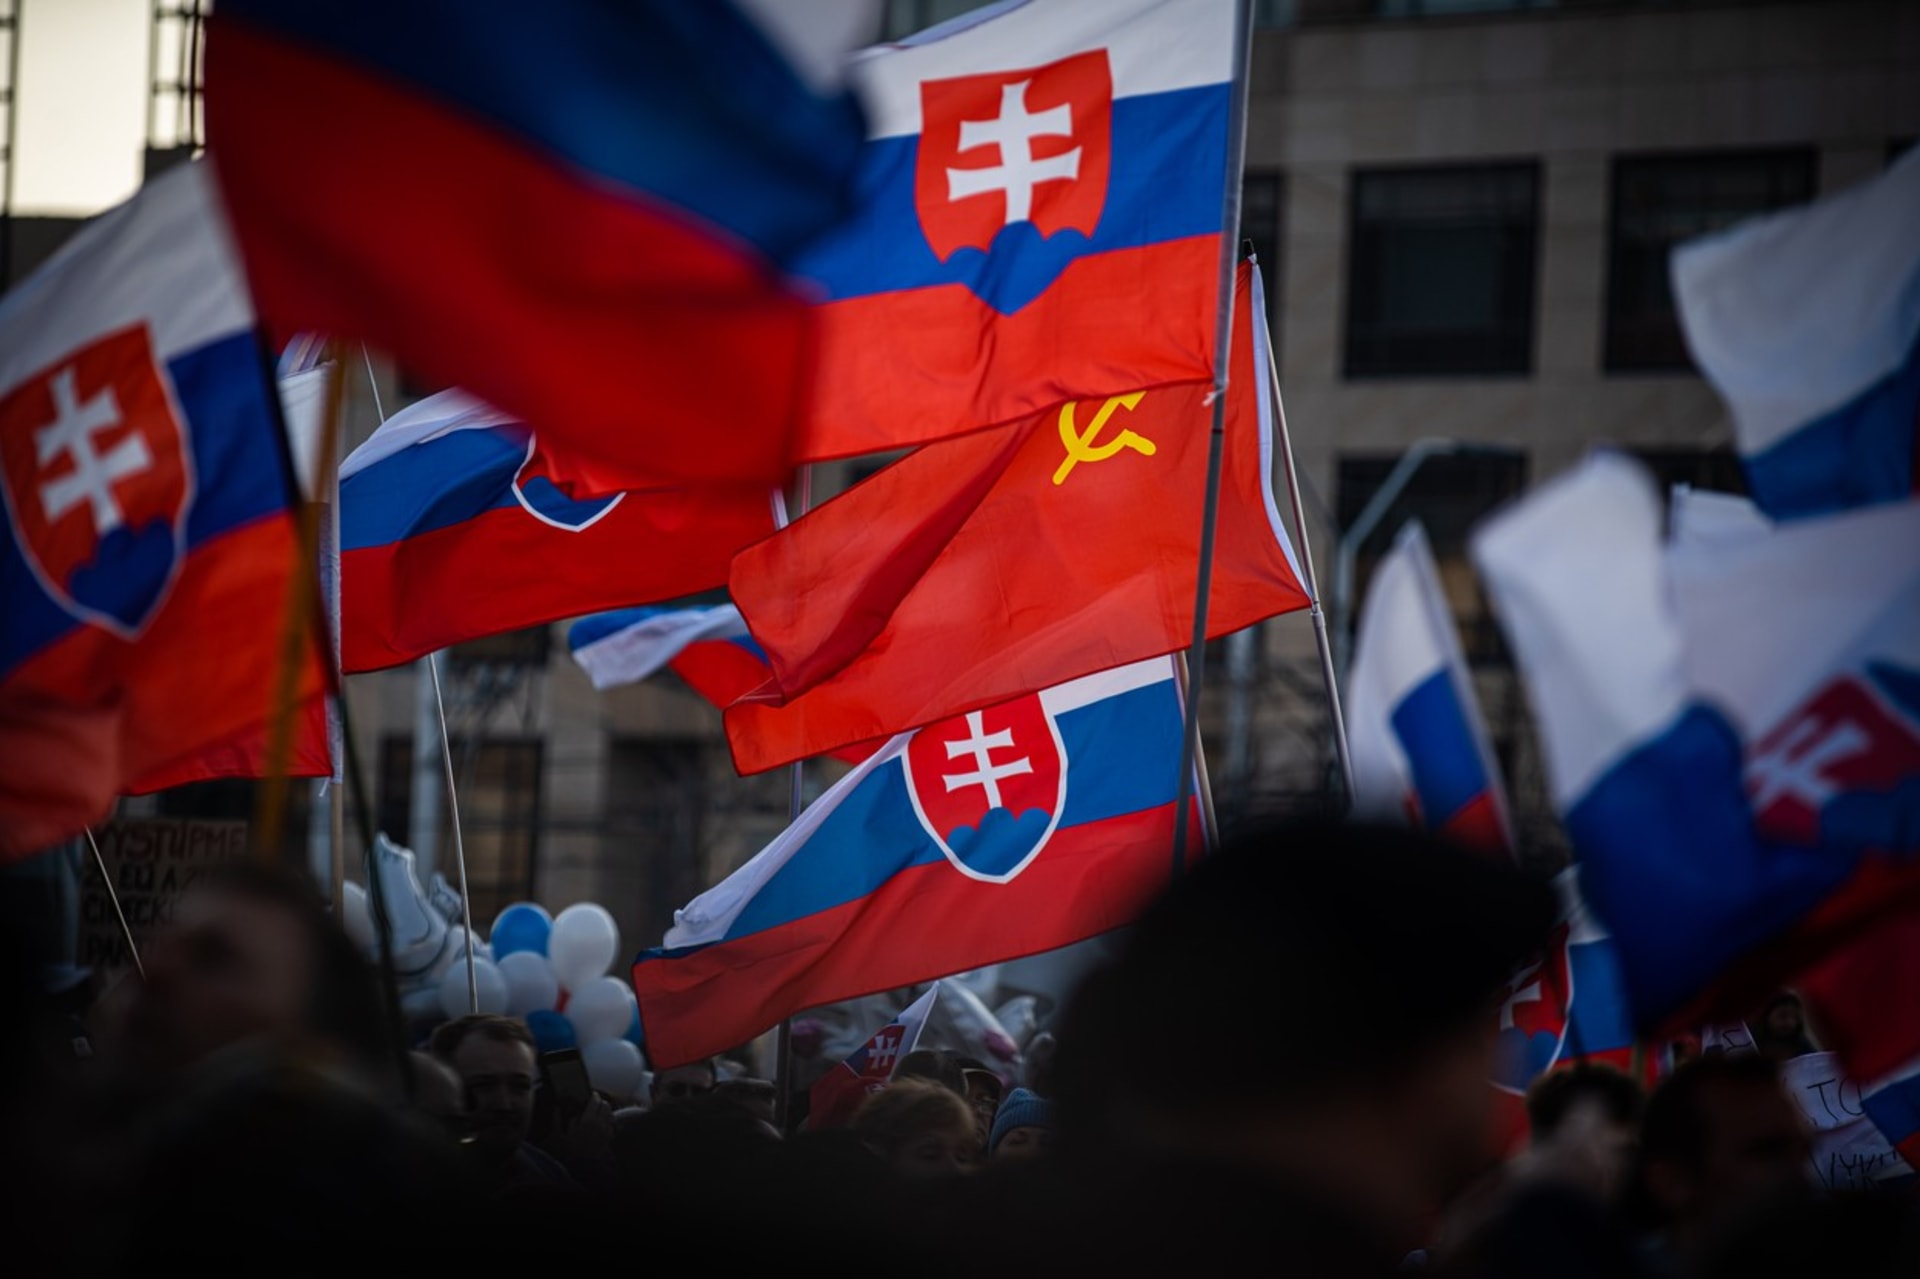 Slovenské „Pochody za mír“ jsou jasně proruské a cílí nejen proti Ukrajině, ale i třeba proti politice prezidentky Zuzany Čaputové a vládě premiéra v demisi Eduarda Hegera.